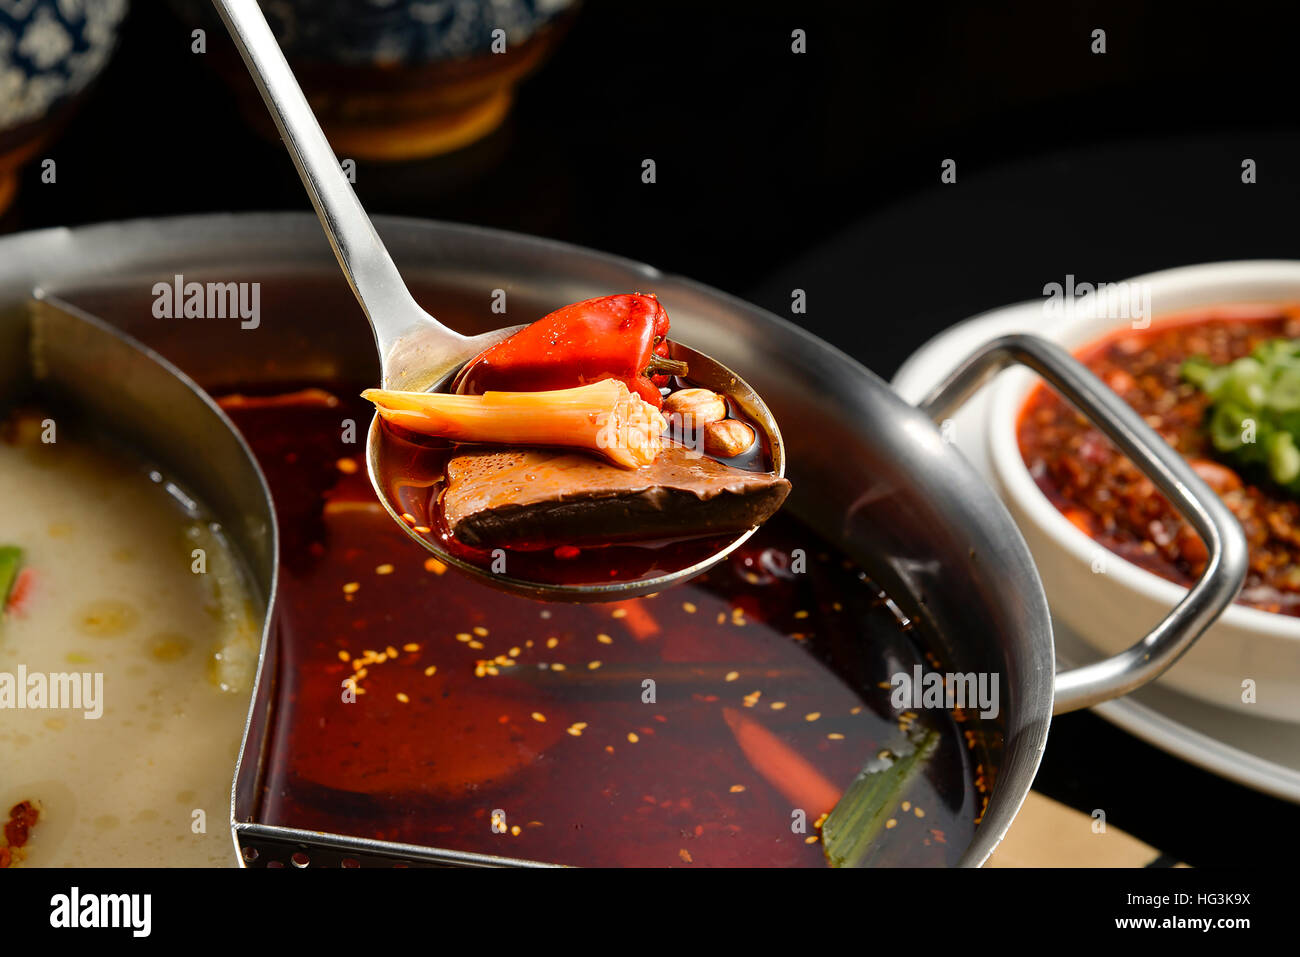 Szechuan Hotpot - würzige chinesische Eintopf mit Rindfleisch, Tofu, Garnelen, Pilze, grüne Blätter und Nudeln. Stockfoto